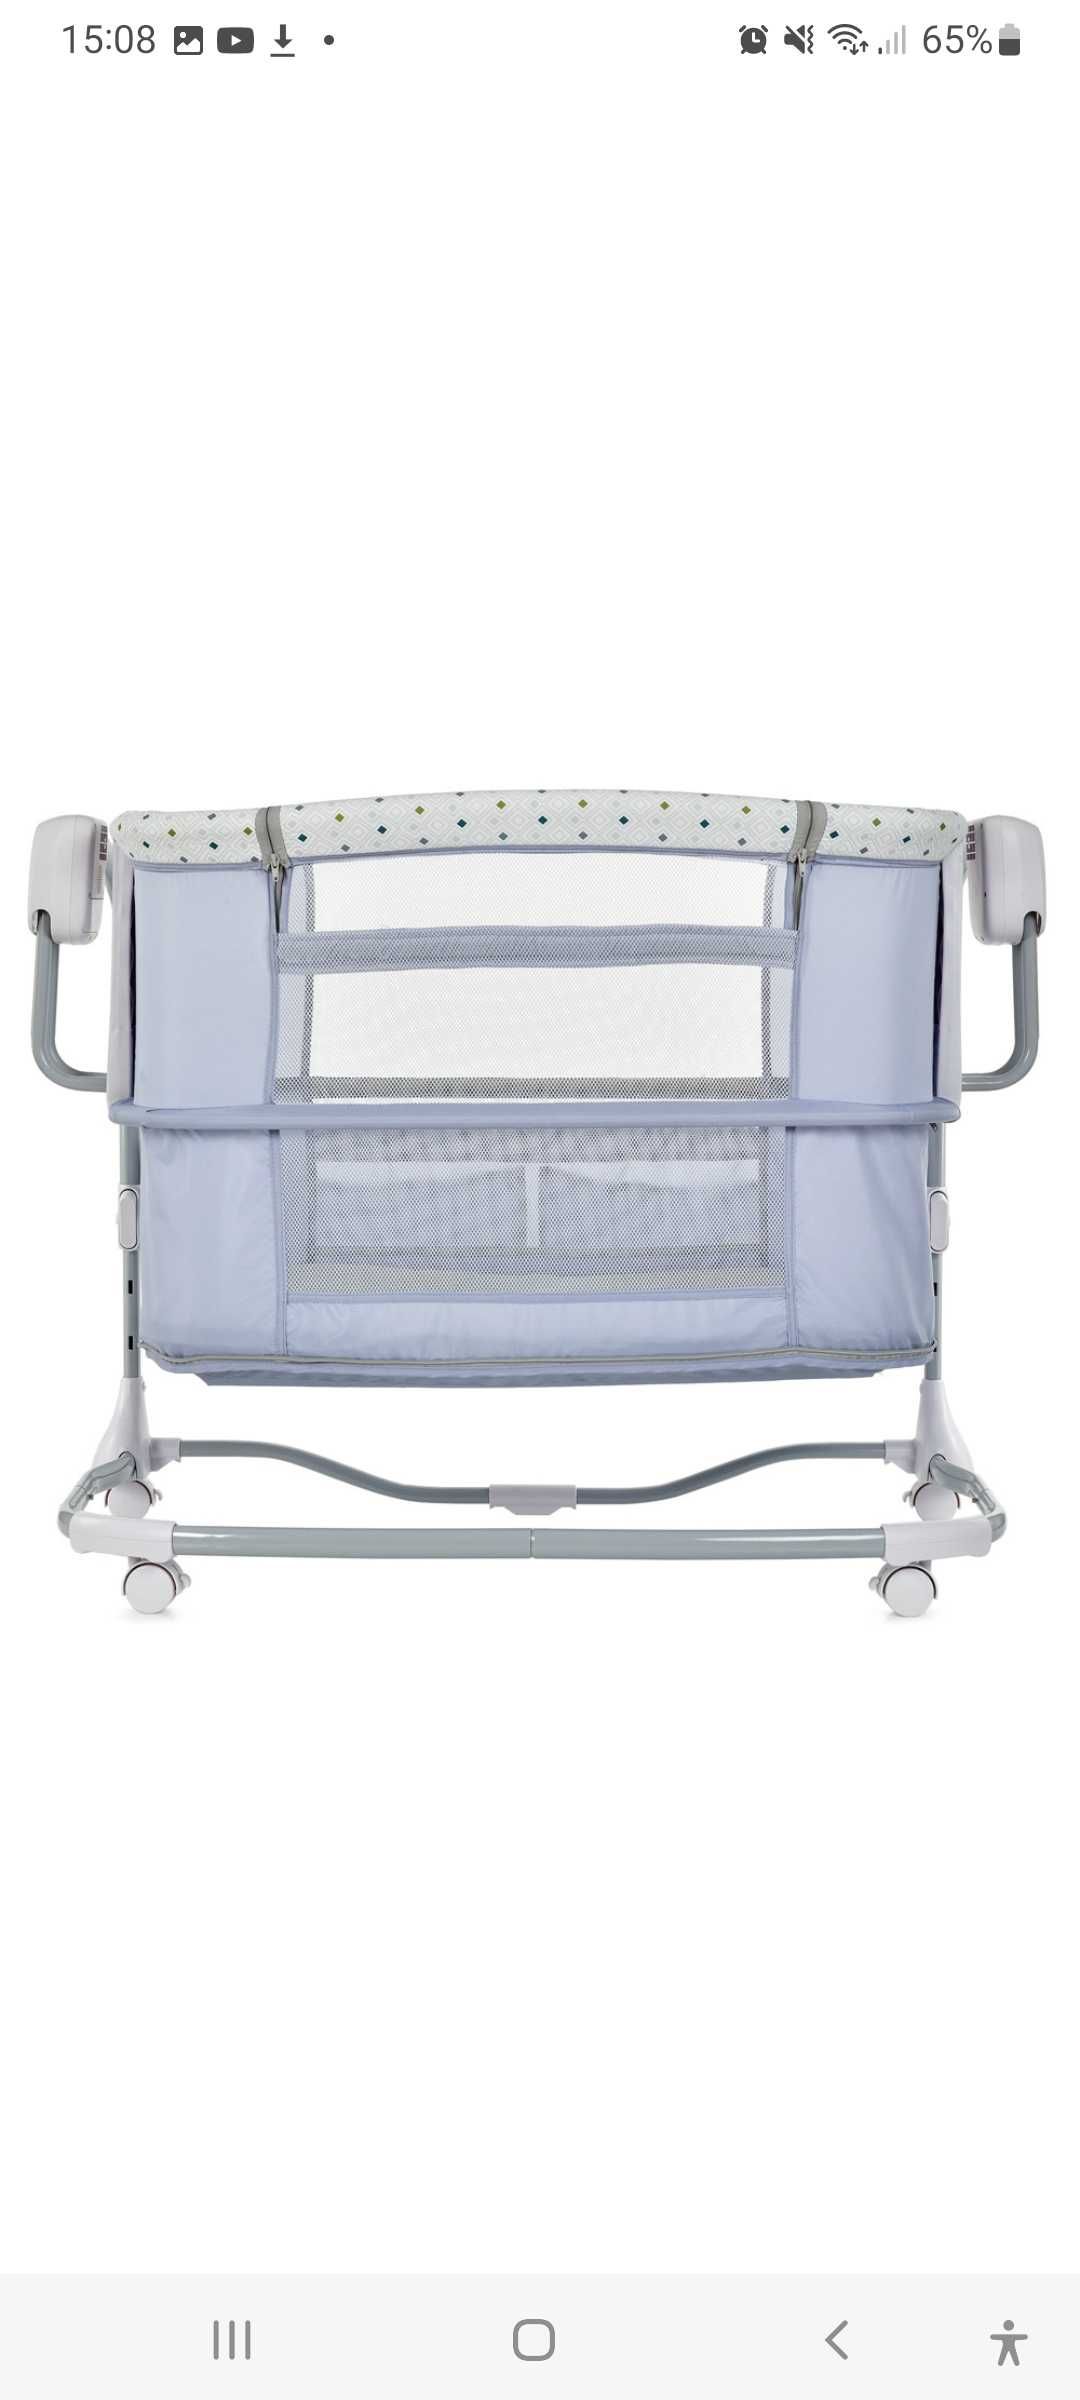 Дитяче ліжко Mastela Deluxe 3in1 Bassinet -приставна колиска немовлят